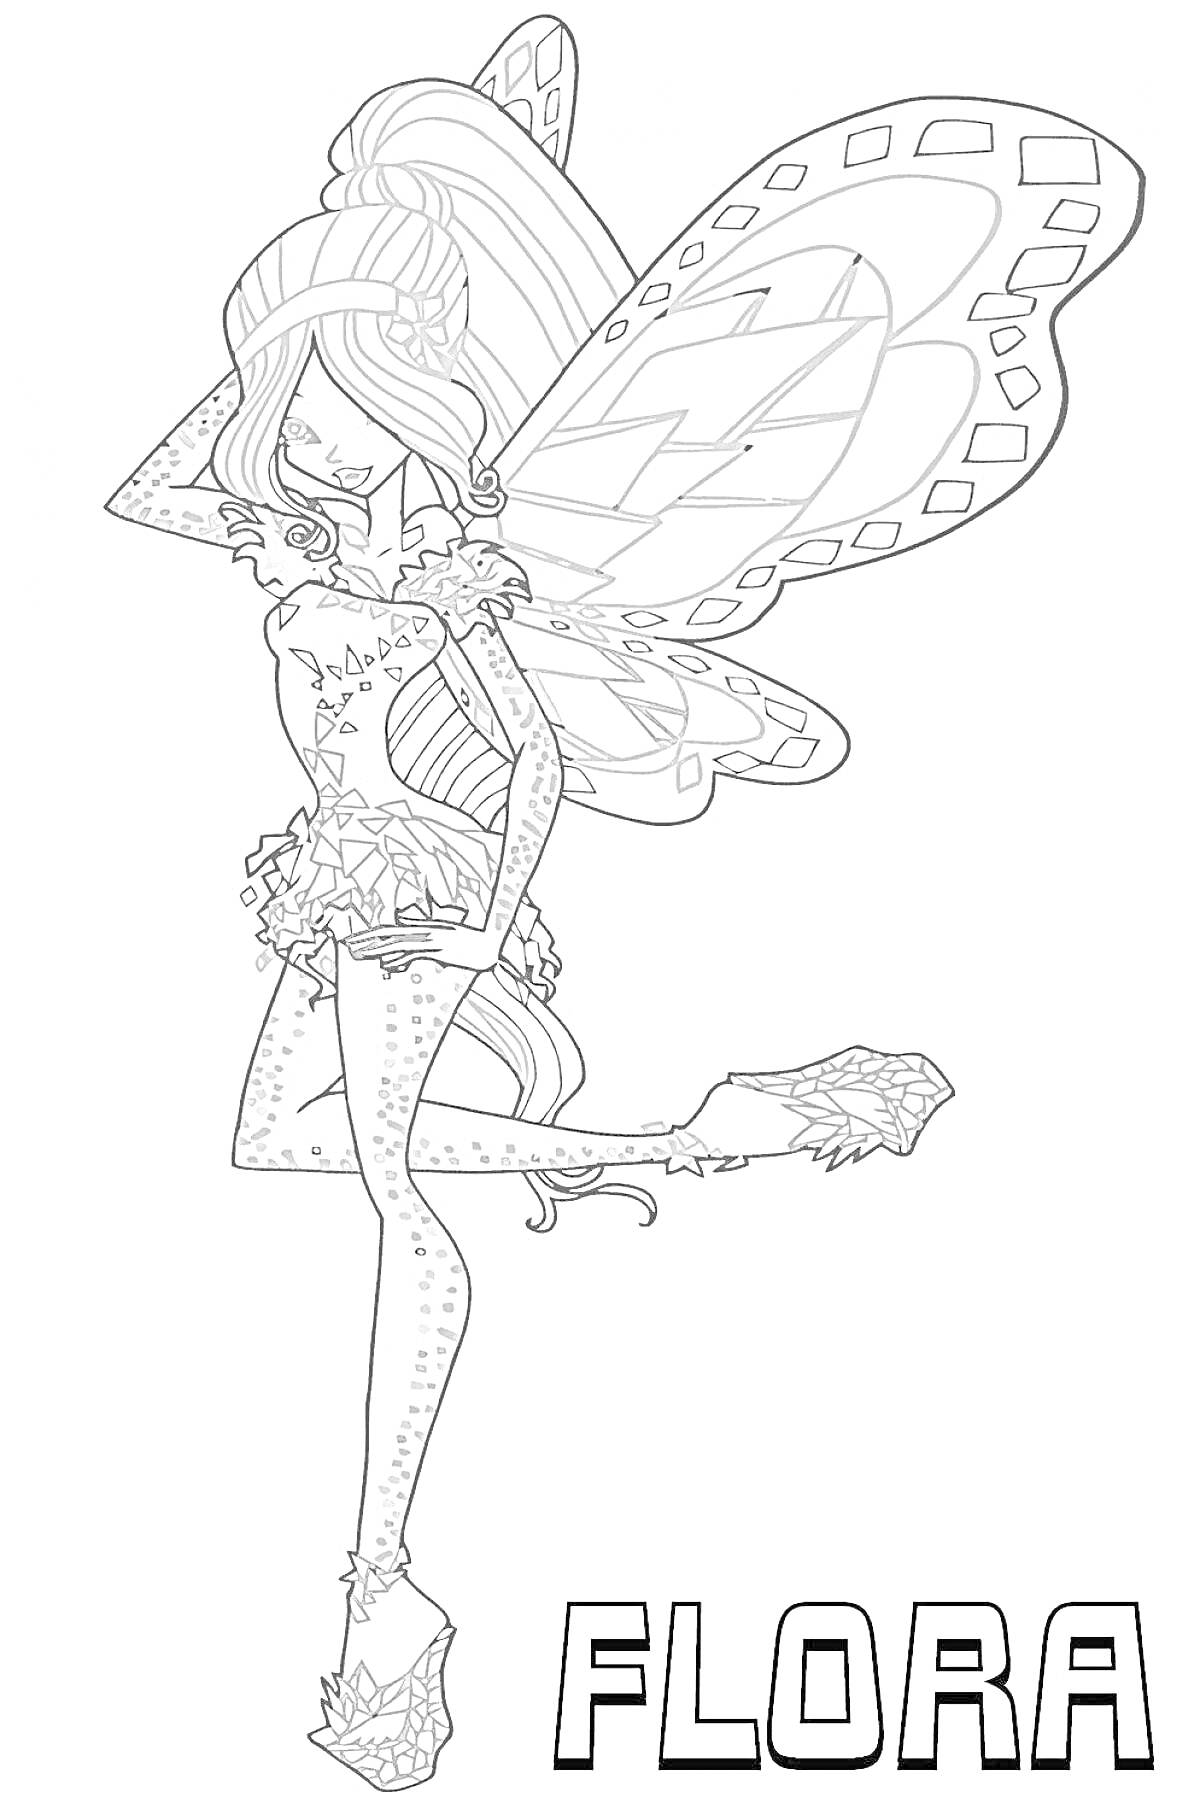 Волшебница Флора в костюме Тайникс, с крыльями, в коротком платье и на высоких каблуках